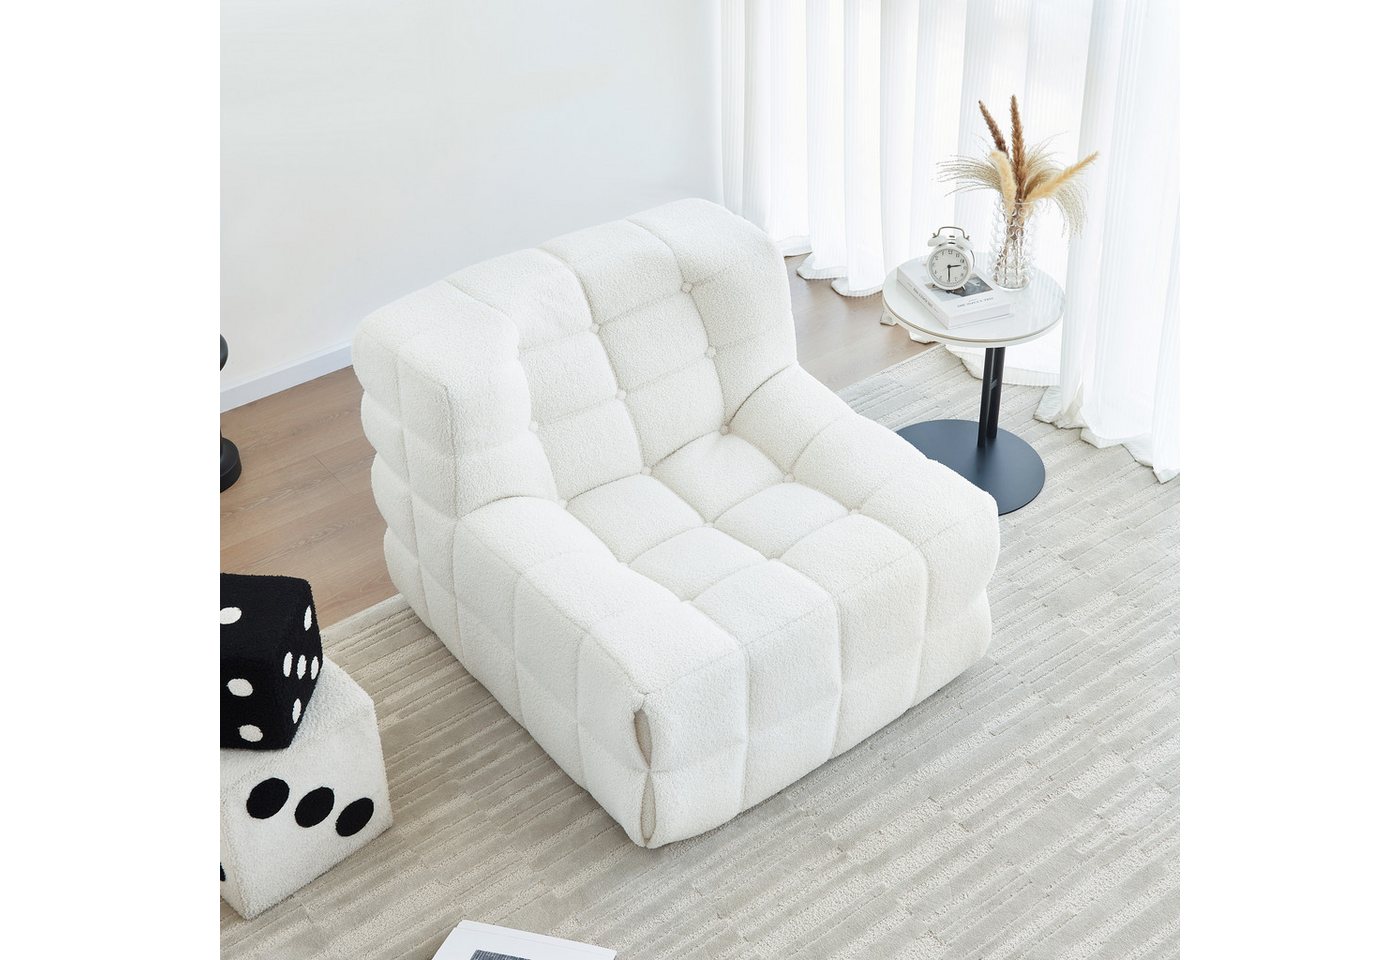 MODFU Sitzsack Sofa Einzelsofa,Wohnzimmer Sofa (nterne rahmenlose Struktur, Produkt als komprimierte Verpackung, Sherpa-Stoff+Schaumstoff), 85x97x74 cm(LxWxH) für Schlafzimmer, Wohnzimmer." von MODFU